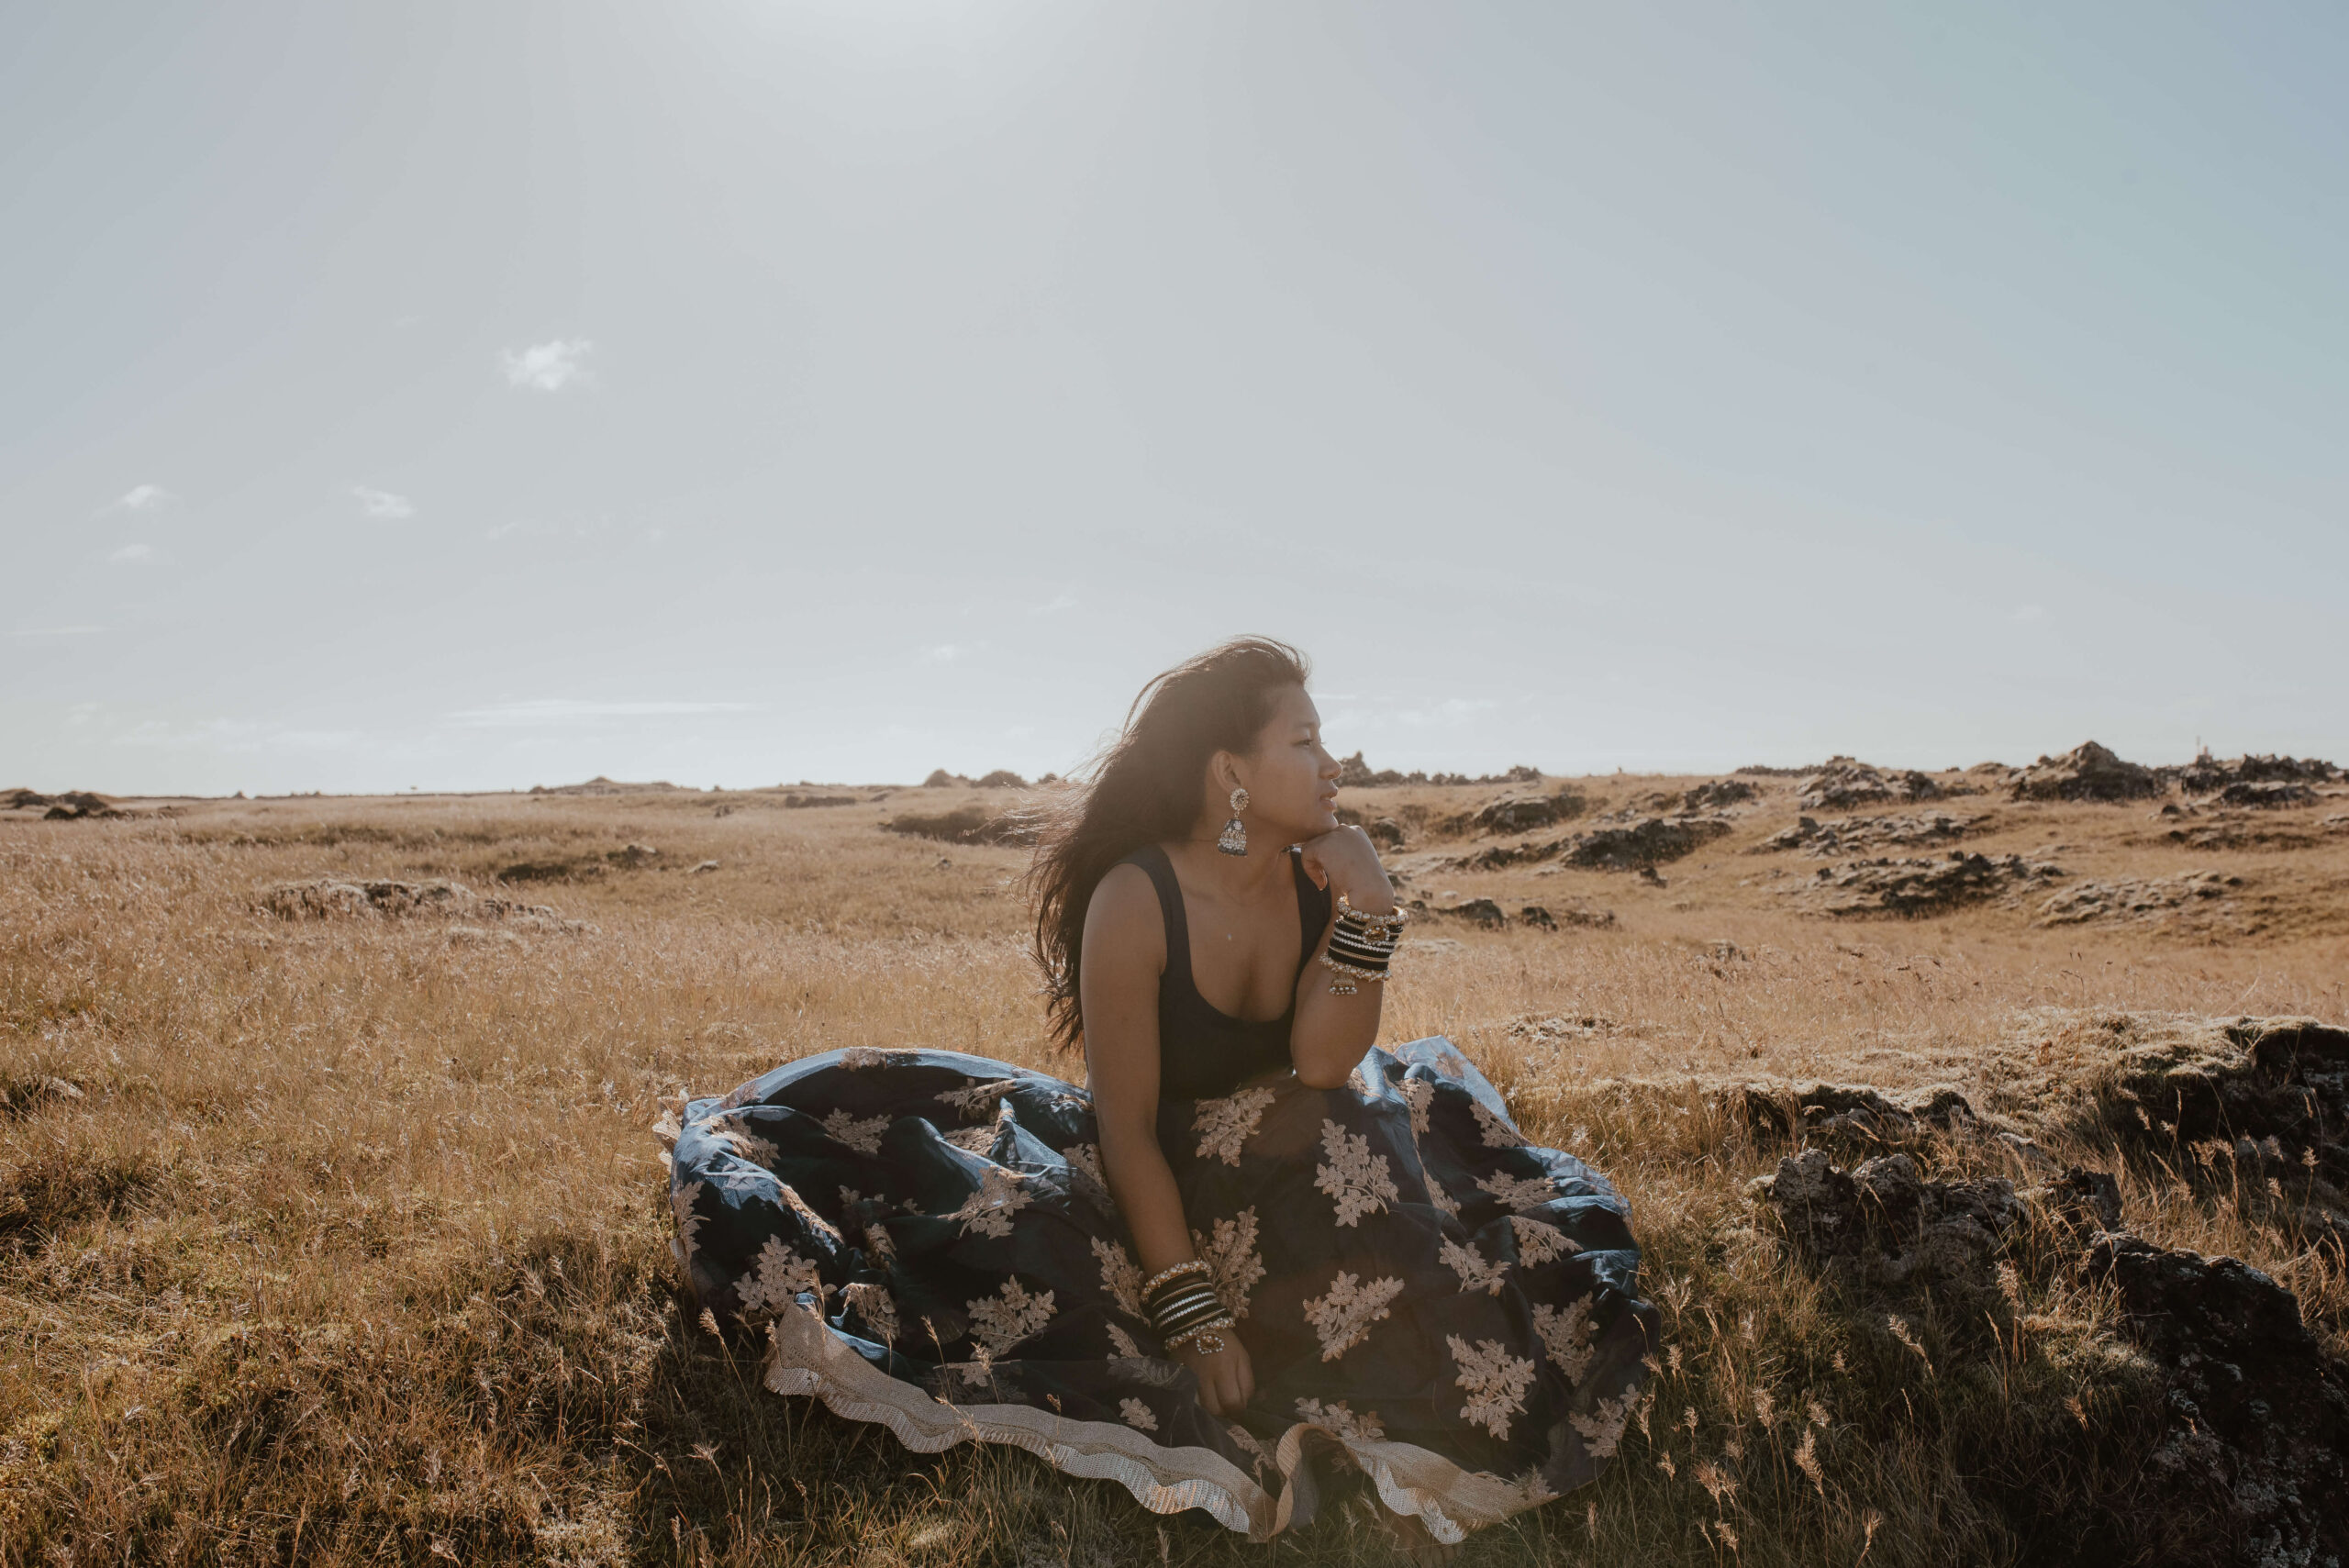 Das Foto zeigt eine junge Frau in einem traditionellen Kleid, die an einem windigen Sommertag auf einer isländischen Wiese steht und sich in der Sonne wärmt. Im Hintergrund des Fotos laufen Schafe in der Ferne umher. Die grünen Hügel und Berge, die den Hintergrund des Fotos bilden, erstrecken sich majestätisch gegen den blauen Himmel. Der Wind weht sanft durch das Gras und lässt es leicht hin- und herwogen. Die Farben des Fotos sind überwiegend Grün- und Blautöne, die die Schönheit und Unberührtheit der isländischen Landschaft widerspiegeln. Insgesamt strahlt das Bild eine gewisse Ruhe und Gelassenheit aus, die den Betrachter in einen Zustand der Entspannung versetzt. Die traditionelle Kleidung, die die junge Frau trägt, verleiht dem Foto eine gewisse kulturelle Bedeutung und verbindet die junge Frau mit ihrer Heimat und ihrer kulturellen Identität. Es ist offensichtlich, dass sie sich in diesem Moment in ihrer Umgebung wohl fühlt und in Einklang mit der Natur ist. Die Schafe im Hintergrund verleihen dem Foto eine weitere Dimension und veranschaulichen die enge Verbindung zwischen den Isländern und ihrer natürlichen Umgebung. Die junge Frau steht in einer selbstbewussten Haltung da, was ihre Stärke und Entschlossenheit zum Ausdruck bringt. Insgesamt ist das Foto ein beeindruckendes Porträt einer jungen Frau, die ihre Schönheit und ihre Verbindung zur Natur feiert.